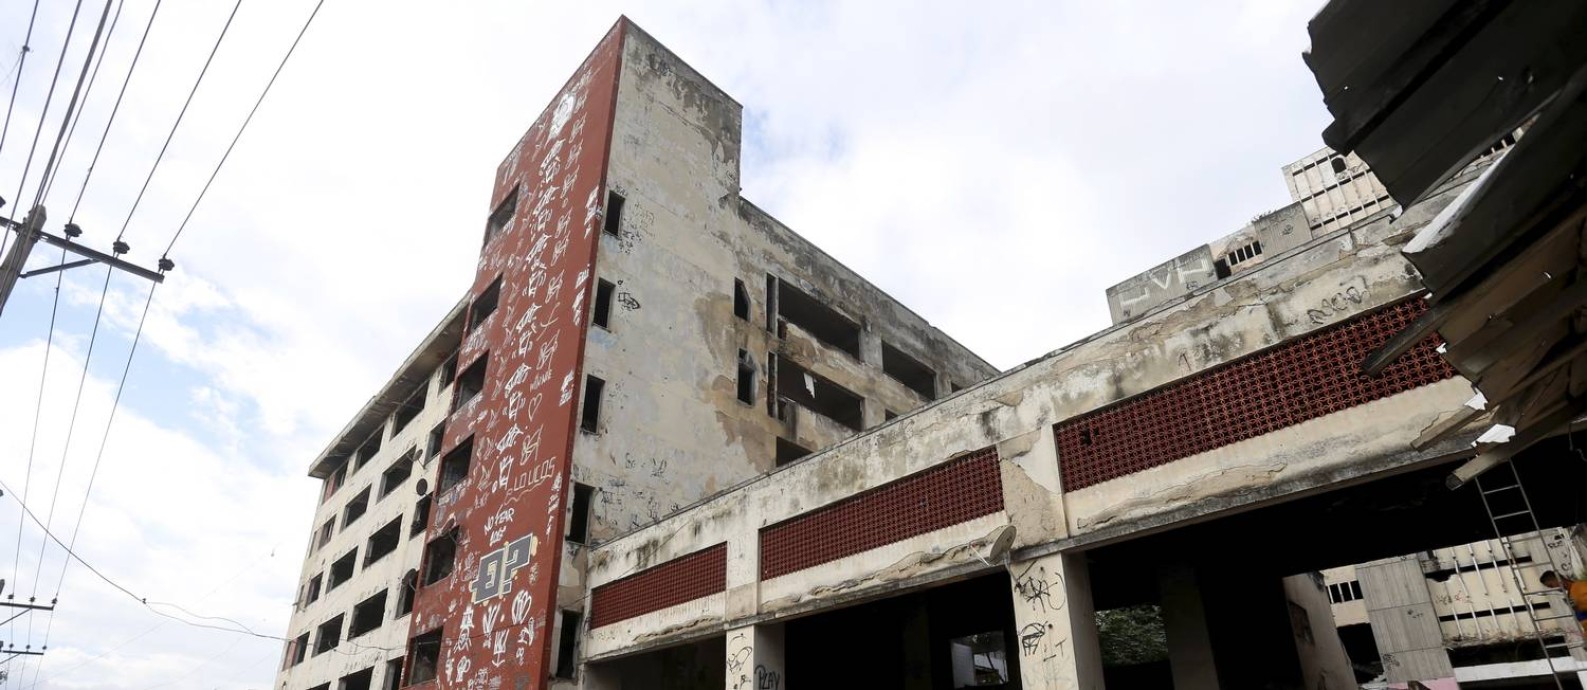 O antigo prédio do IBGE na Mangueira que será implodido neste domingo Foto: Arquivo / 03/05/2018 / Marcelo Theobald / Agência O Globo